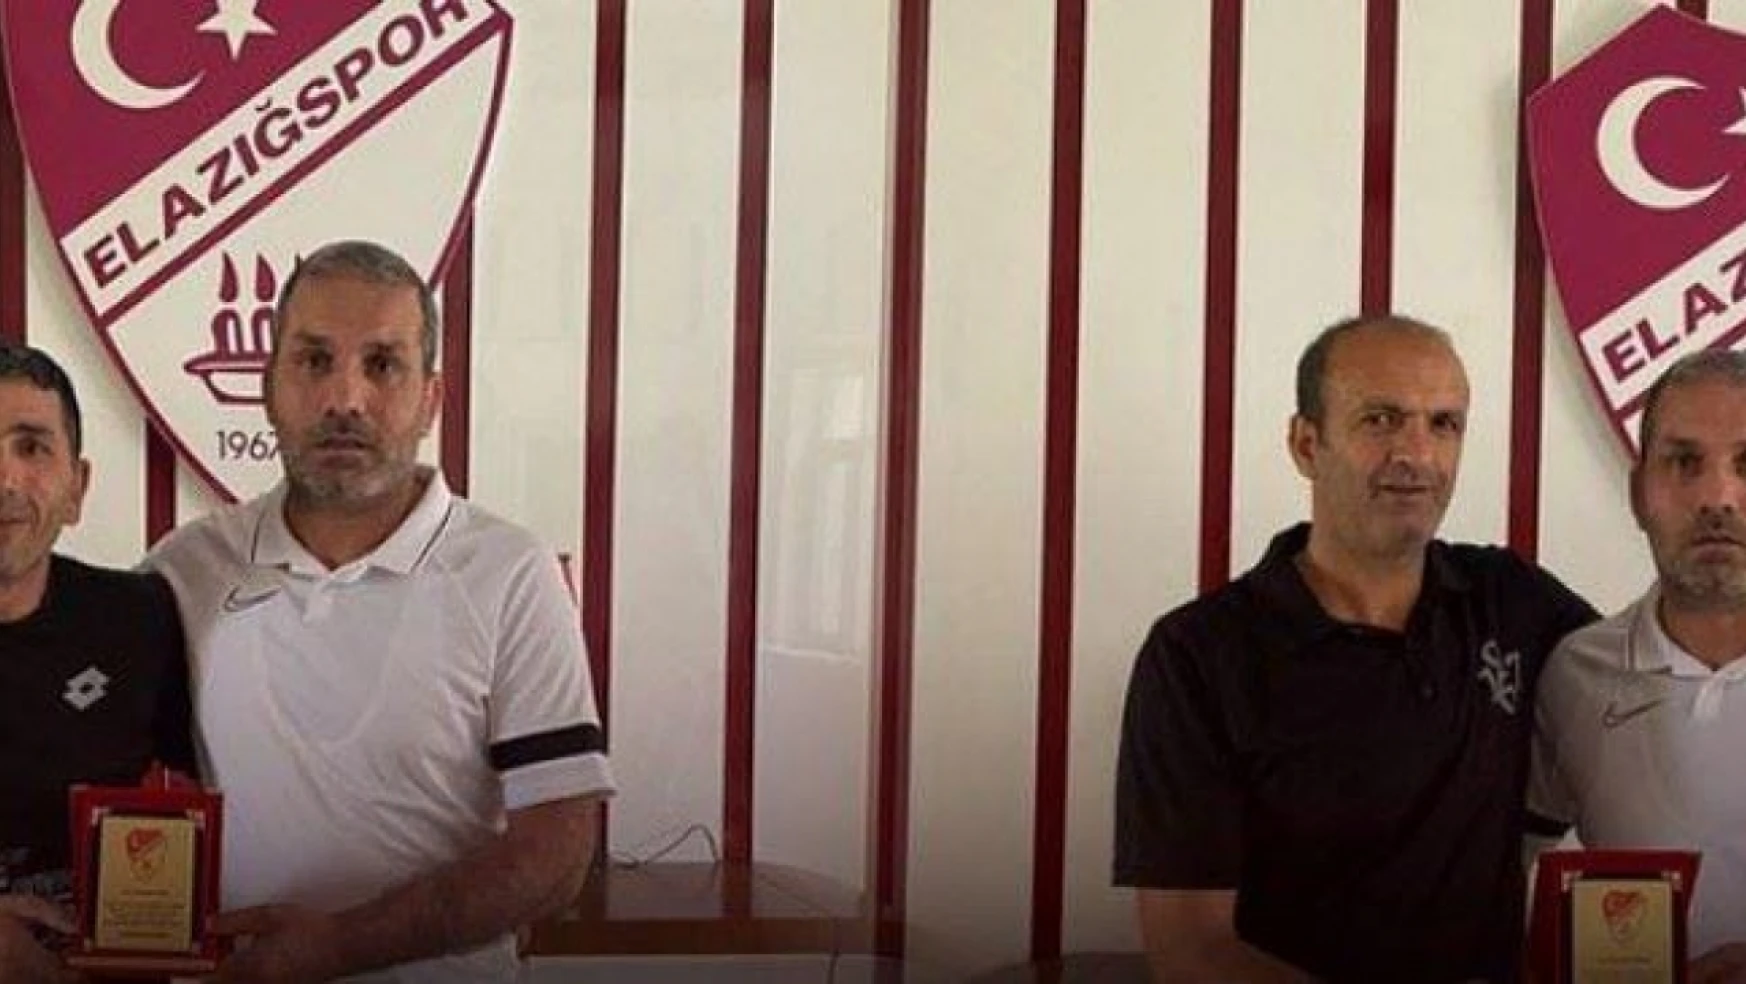 Elazığspor'un 2 emektarı emekli oldu